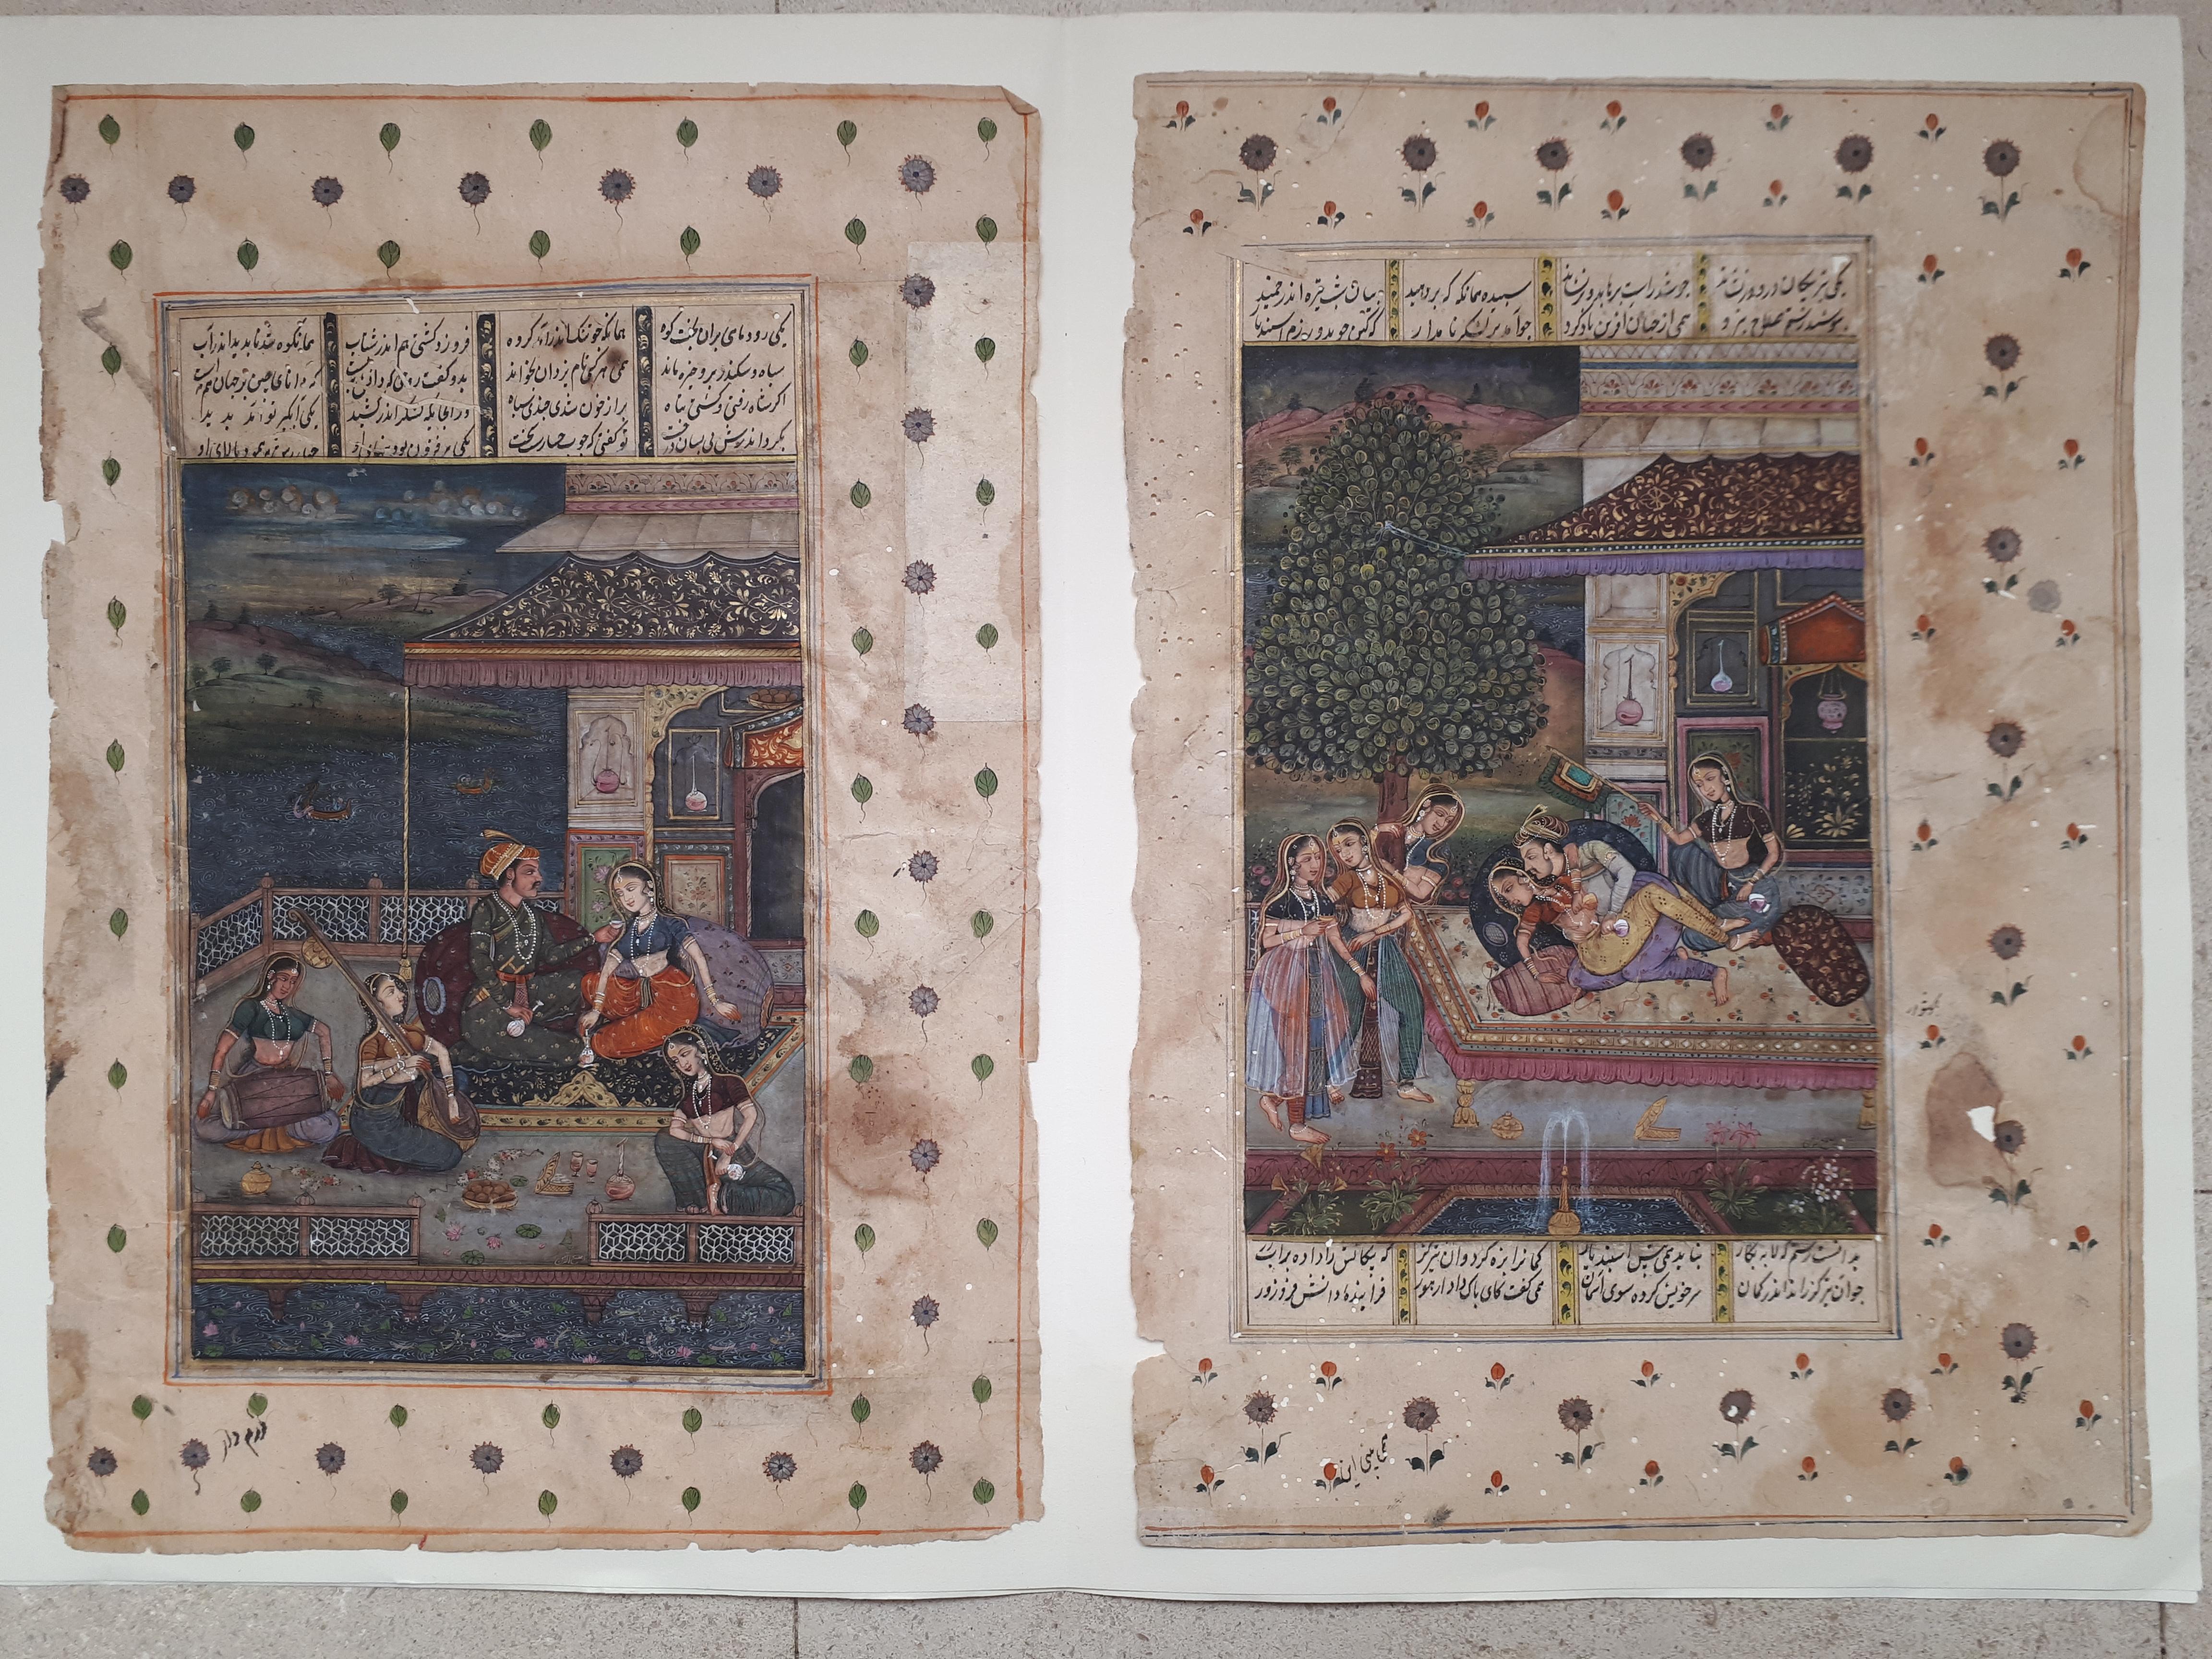 Deux miniatures indiennes représentant des scènes galantes, peintes avec une extrême finesse !
Gouache, encre et rehauts d'or sur papier.
Dimensions des miniatures seules : 14 x 20 cm.